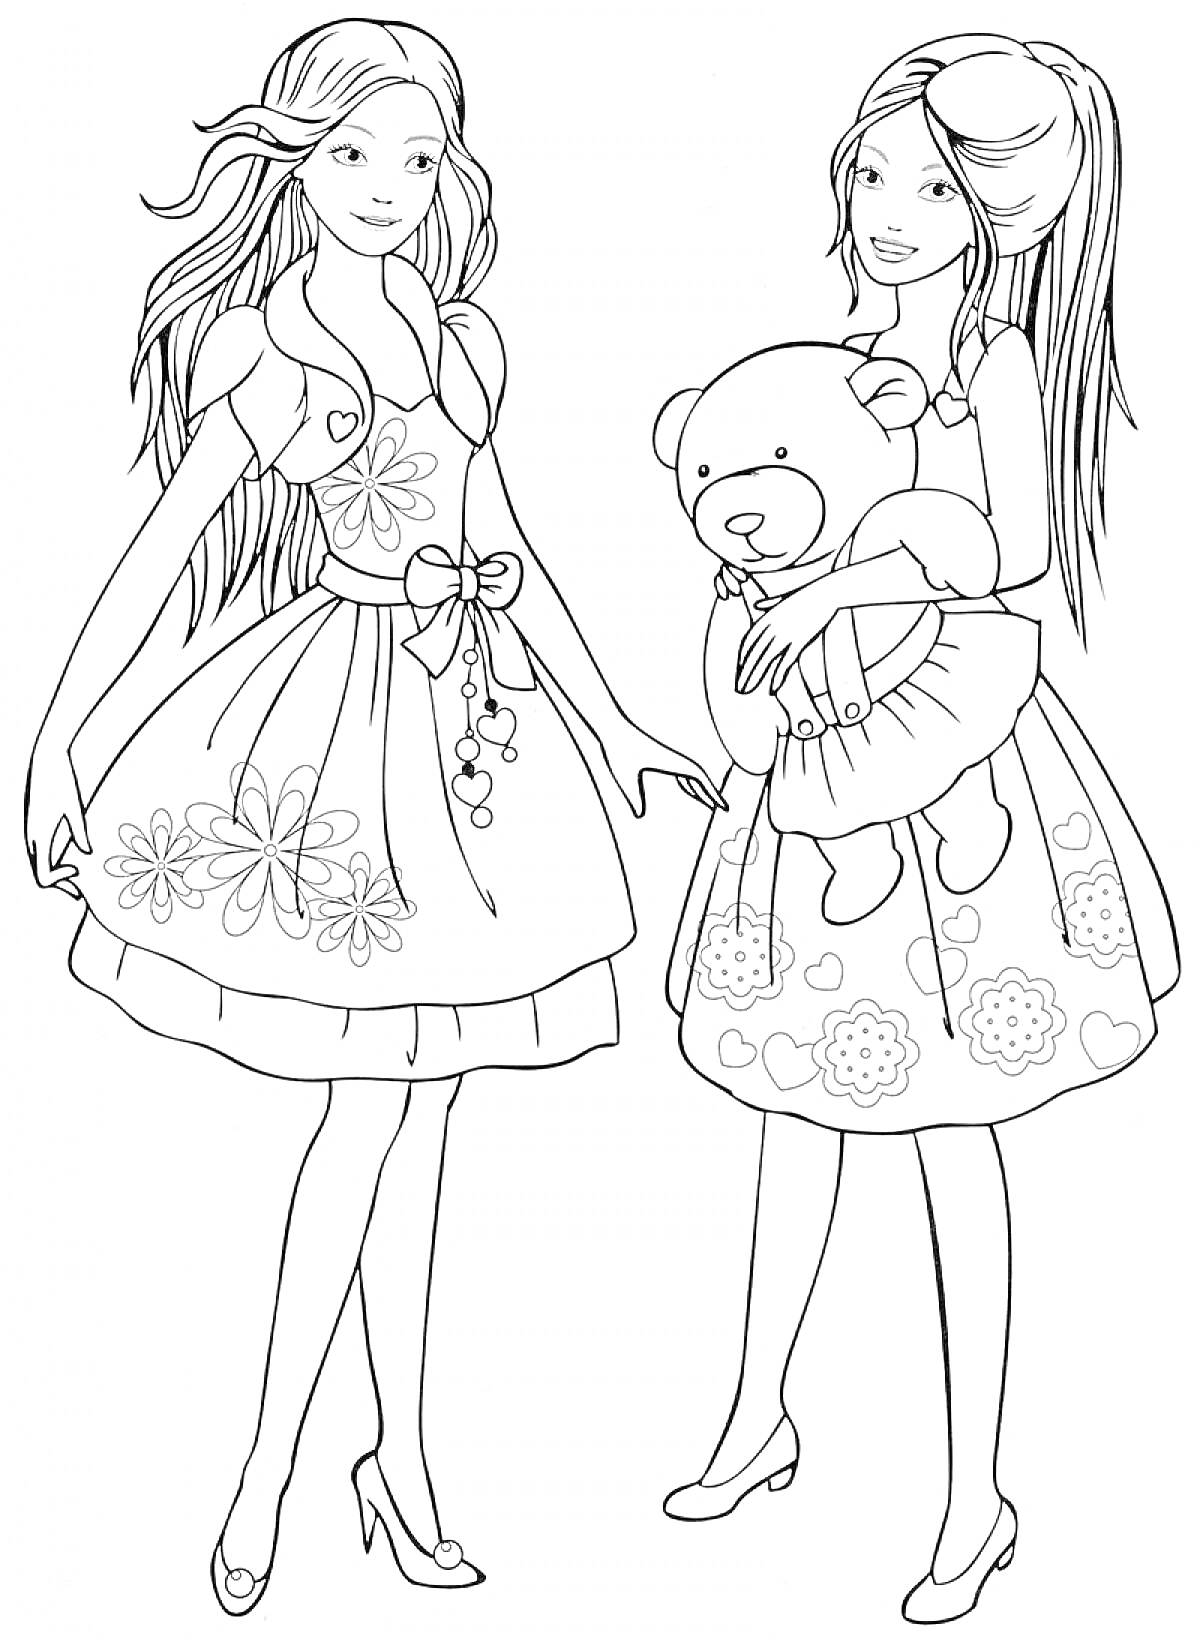 Раскраска Две девочки в платьях с игрушечным медведем